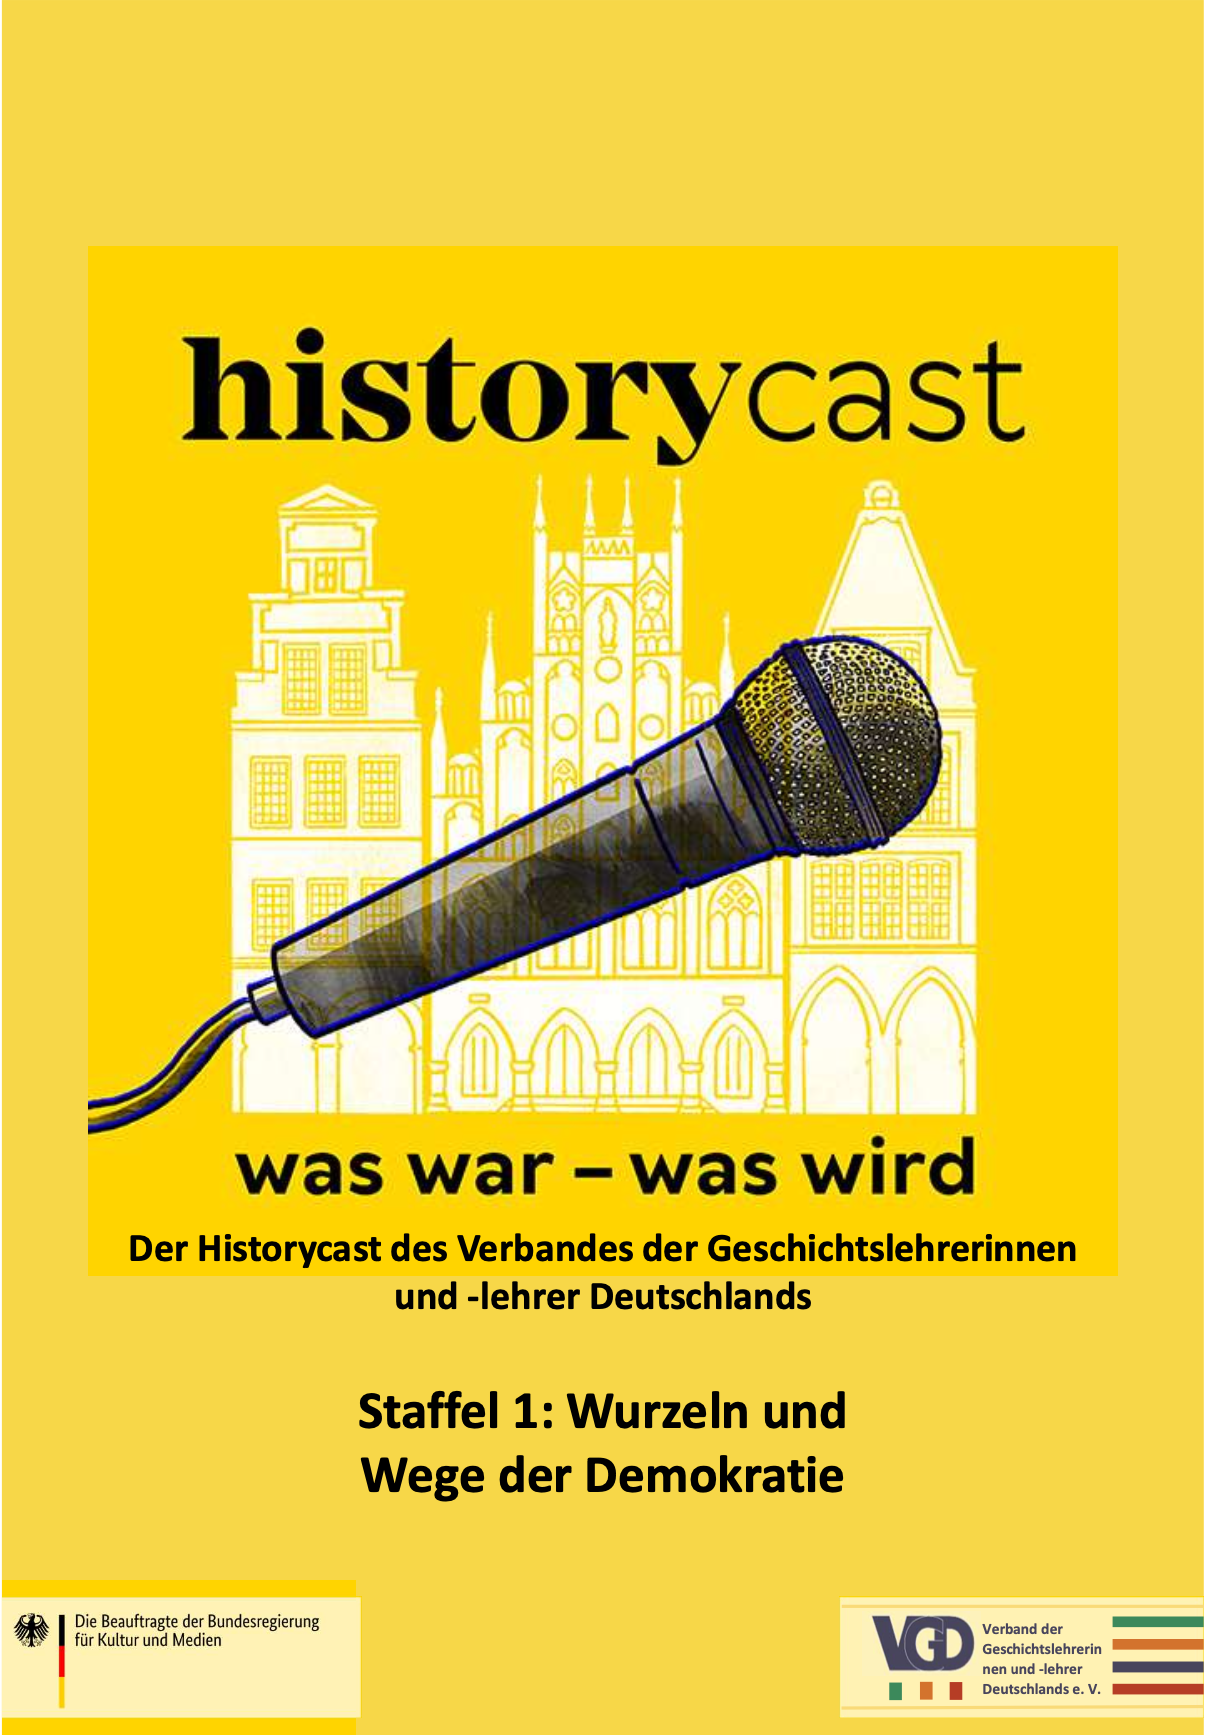 historycast startet am 14.01.2021